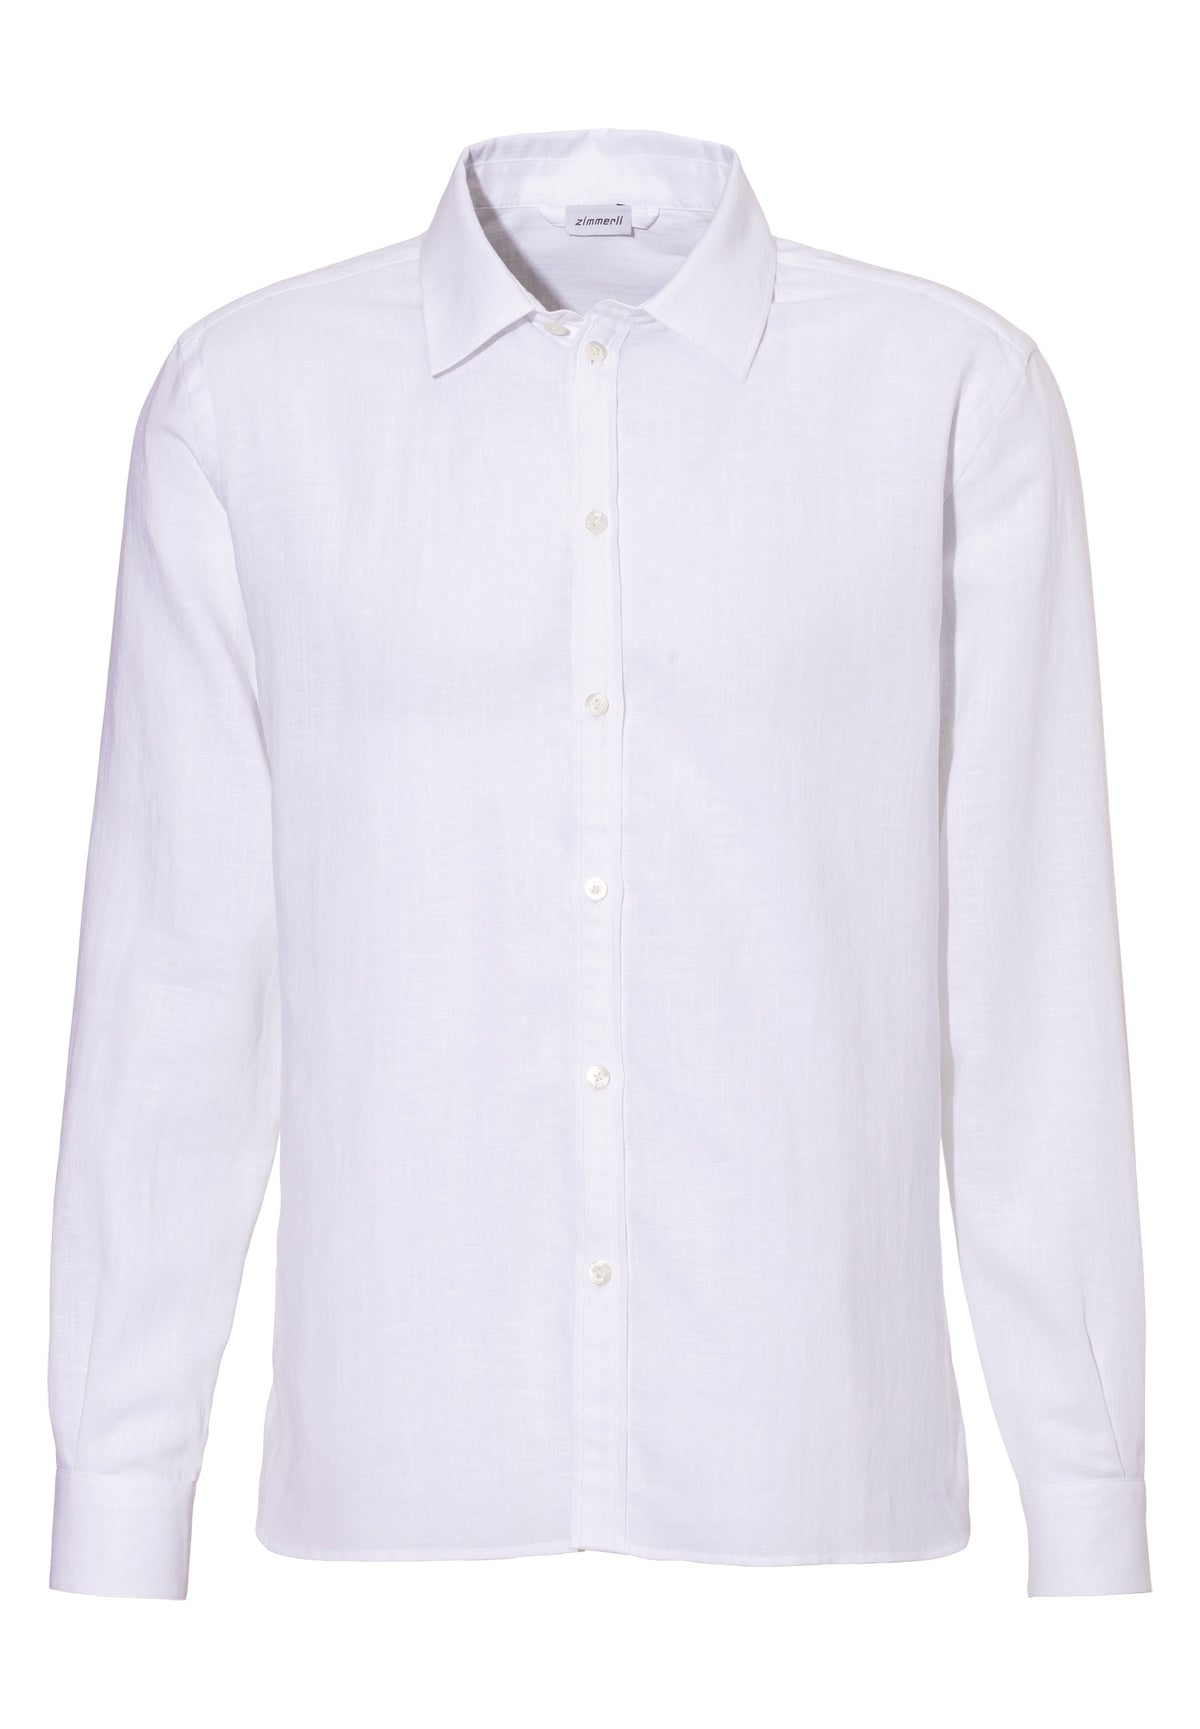 Linen Blend | Chemise avec fermeture frontale à boutons, manches longues - white